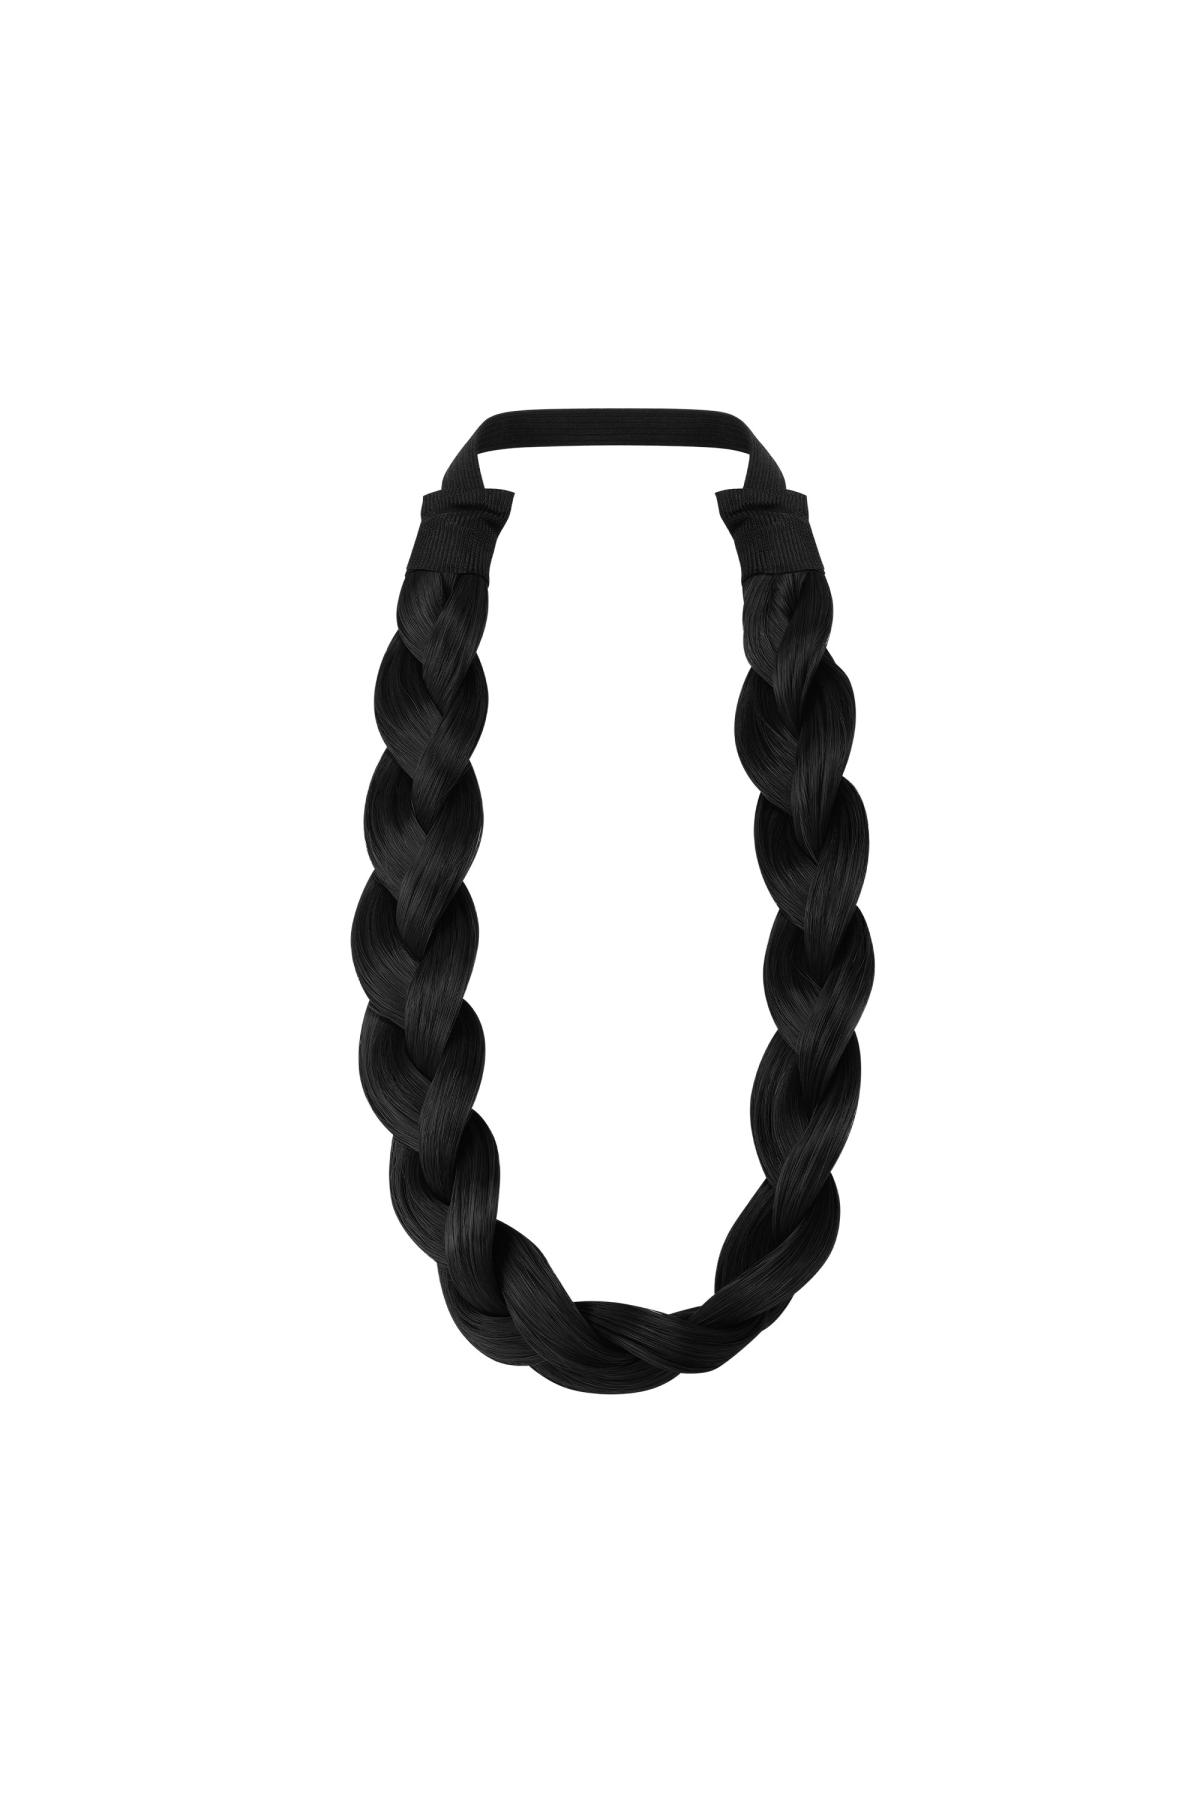 Hair braid Black Polyester h5 